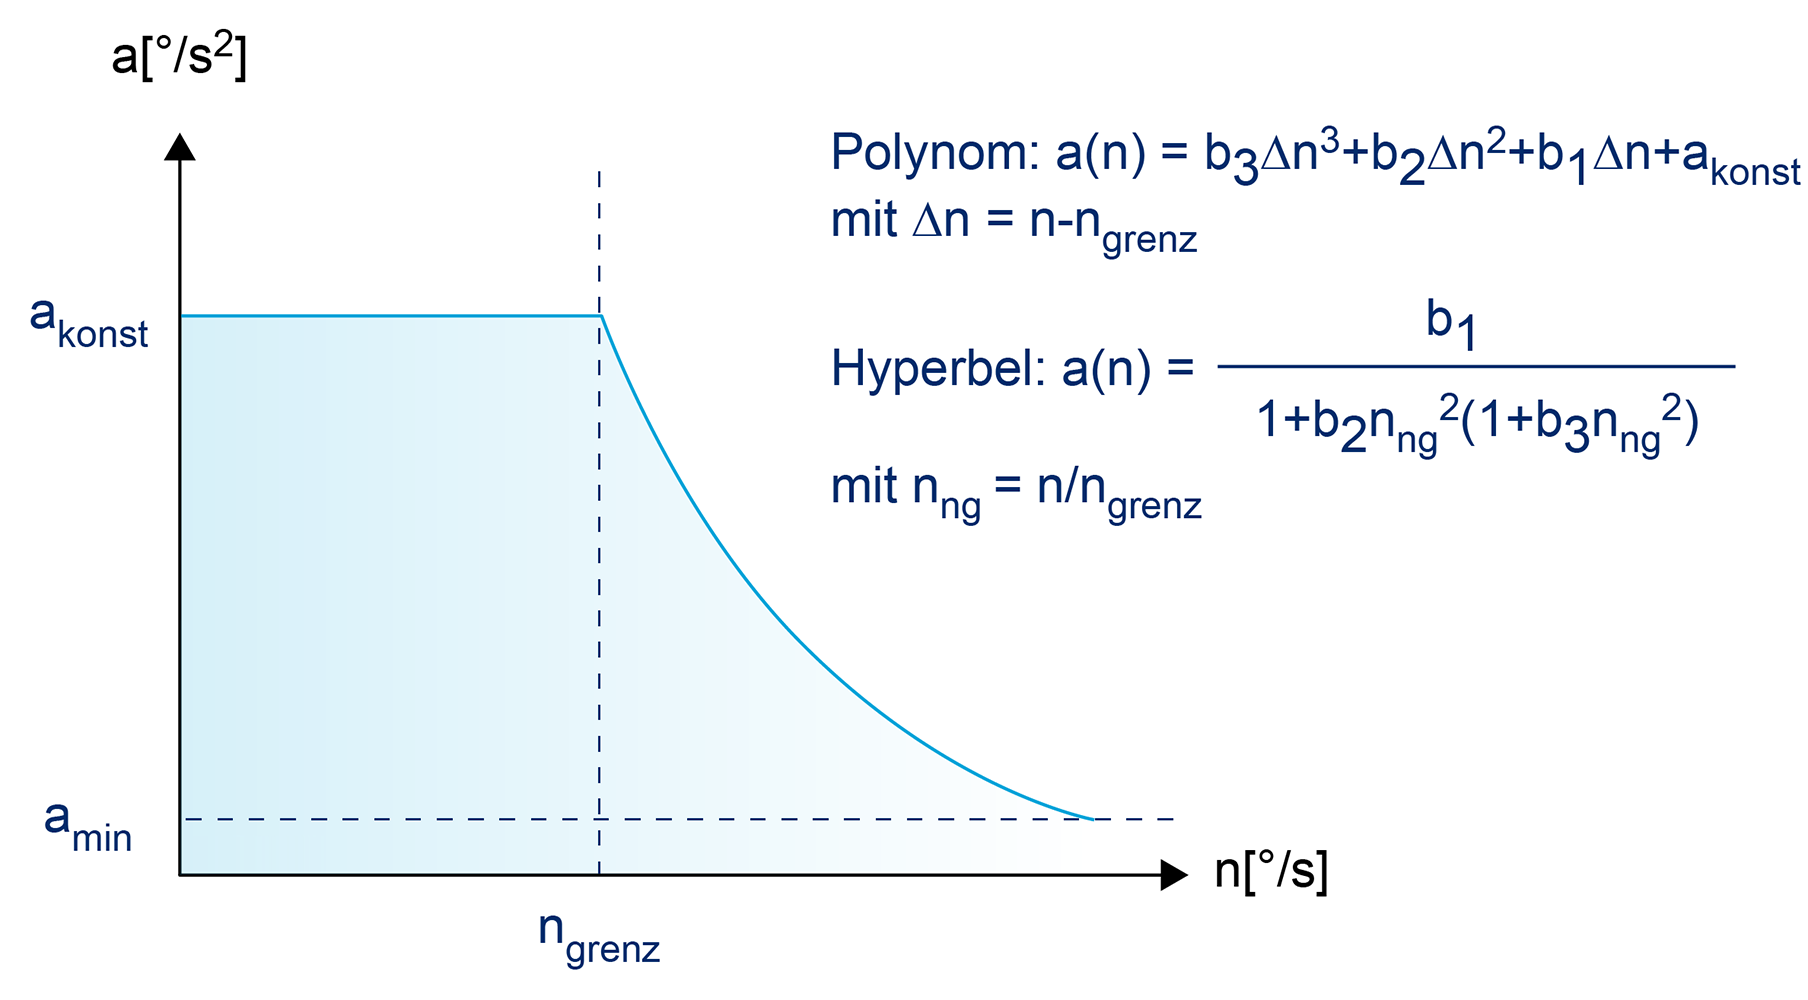 Verlauf der Beschleunigung gemäß Polynom oder Hyperbel